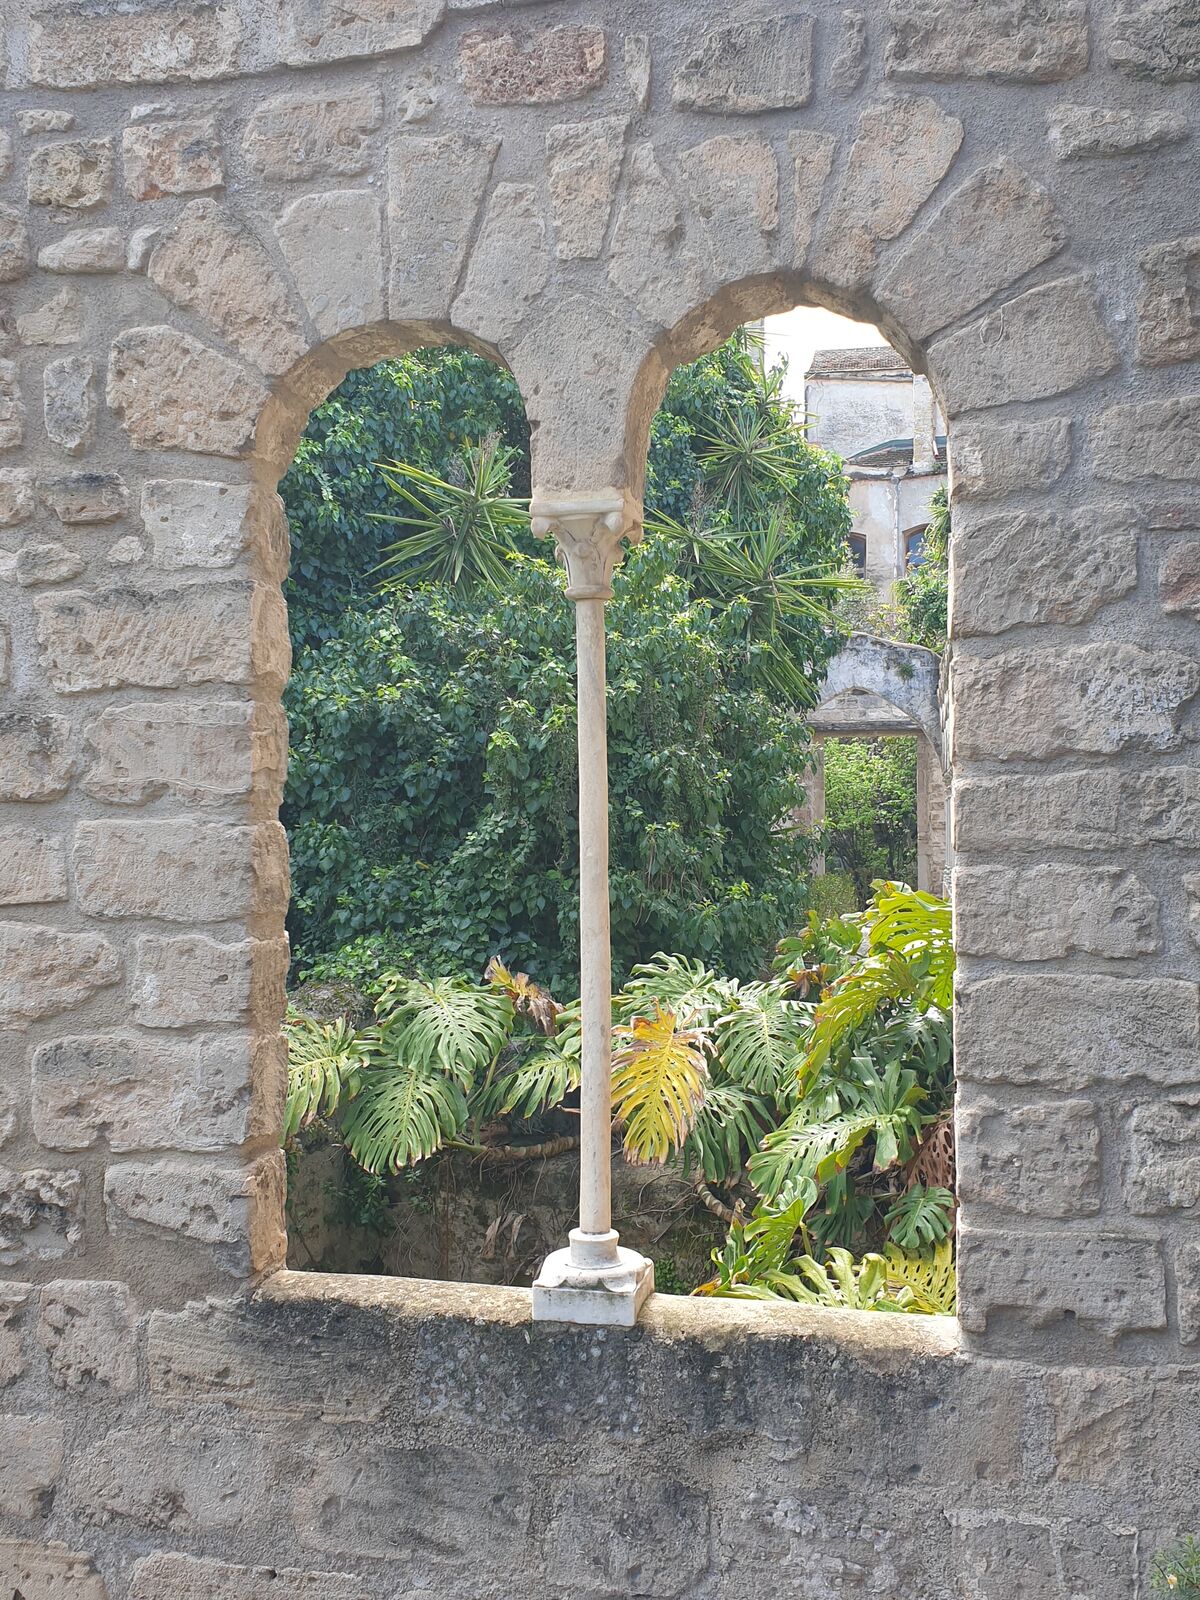 View of a monstera plant at Chiesa di San Giovanni degli Eremiti